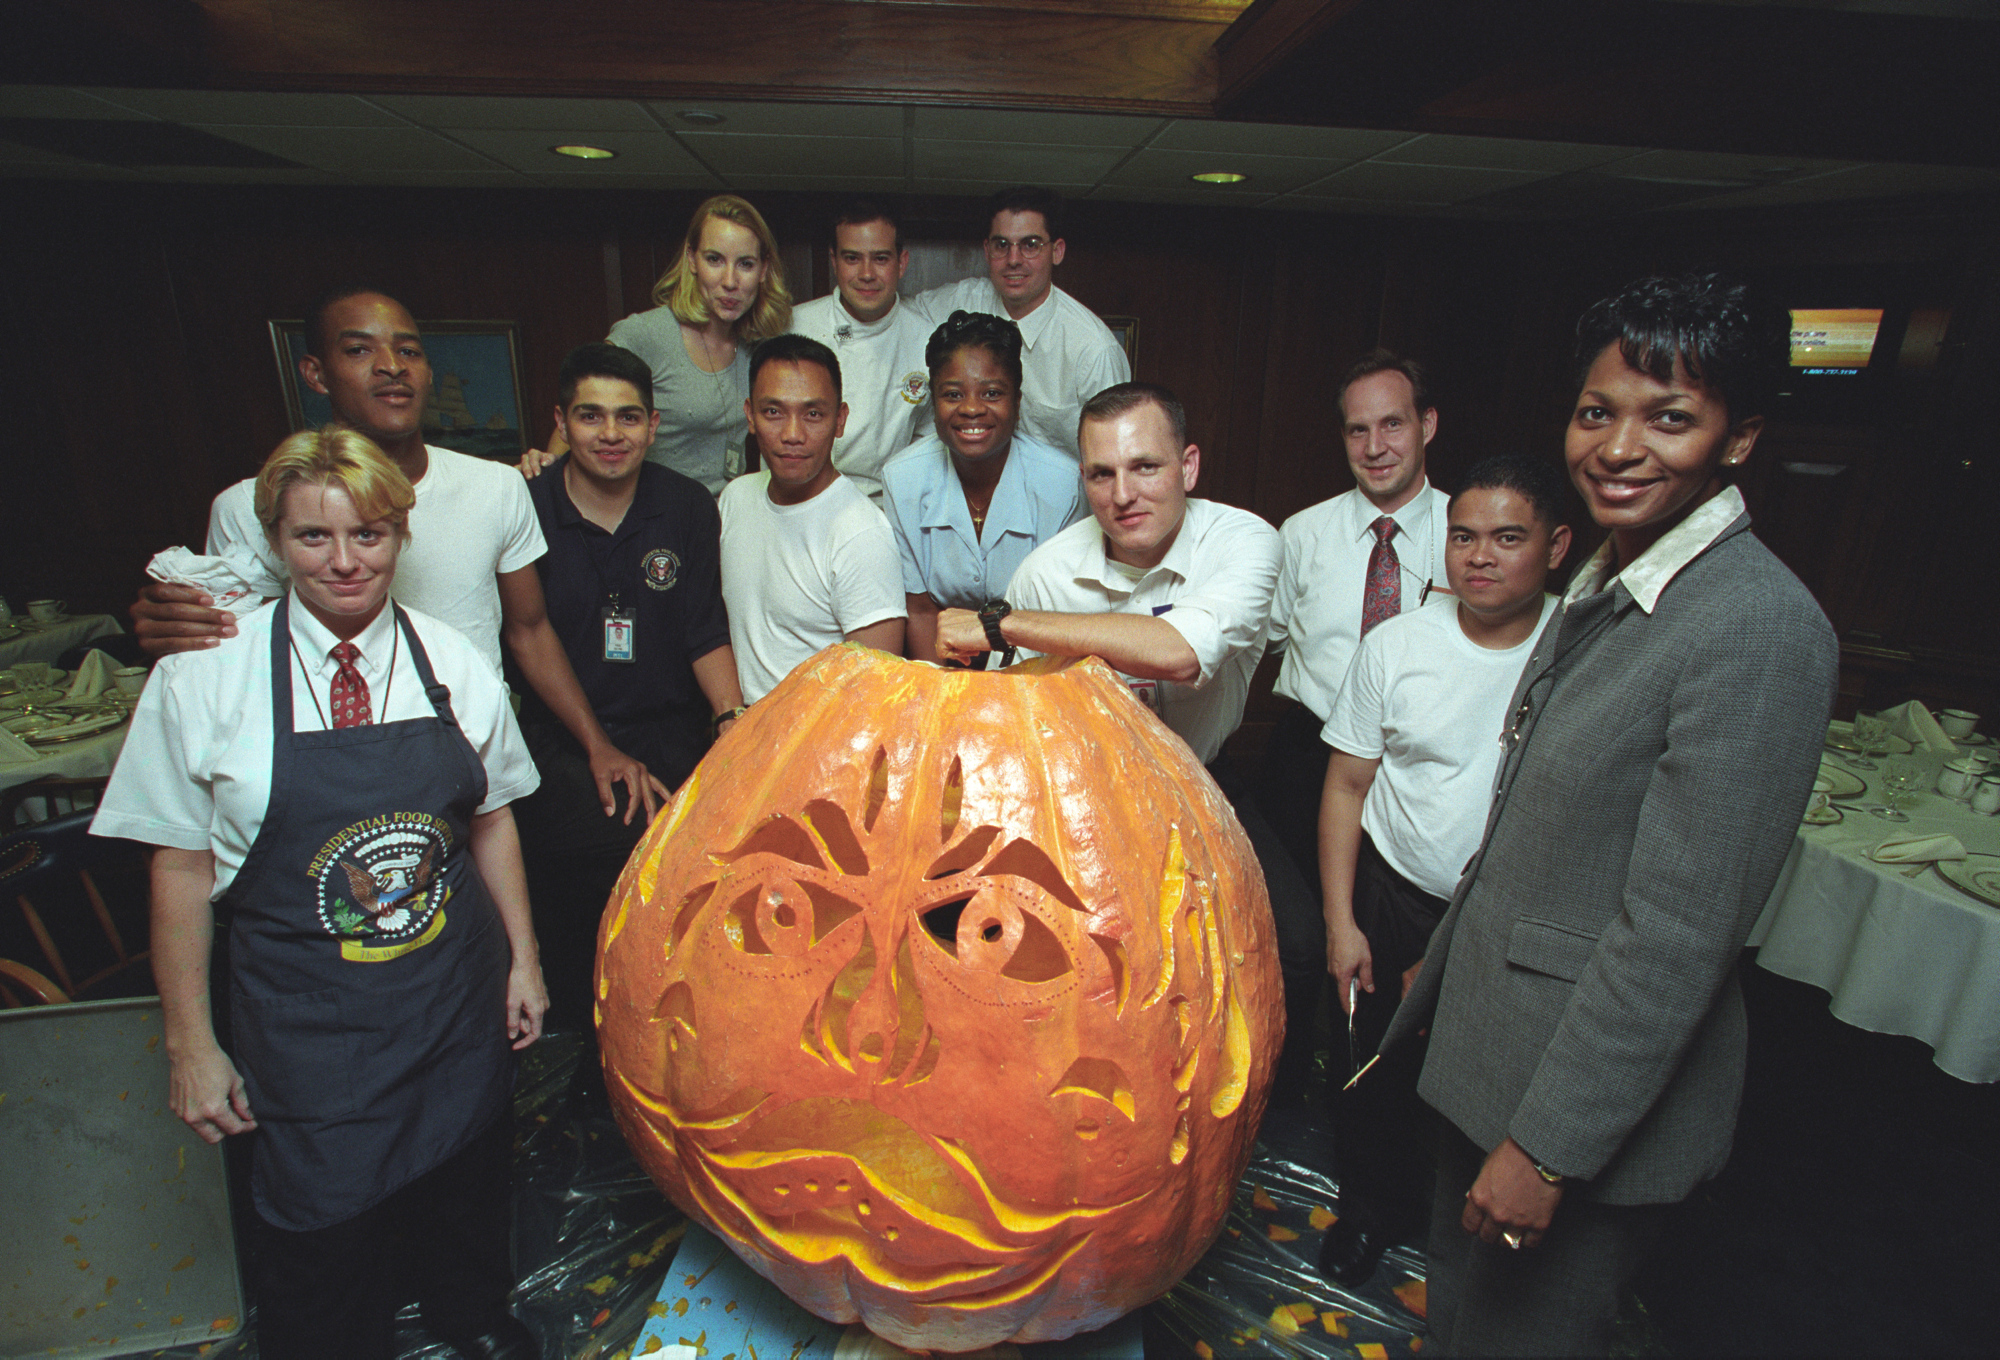 2000 Các nhân viên Nhà Trắng tạo dáng với chiếc đèn lồng khổng lồ được chạm khắc dưới thời chính quyền Bill Clinton. Nhóm này đang đứng trong Hải quân Mess ở Cánh Tây của Nhà Trắng.